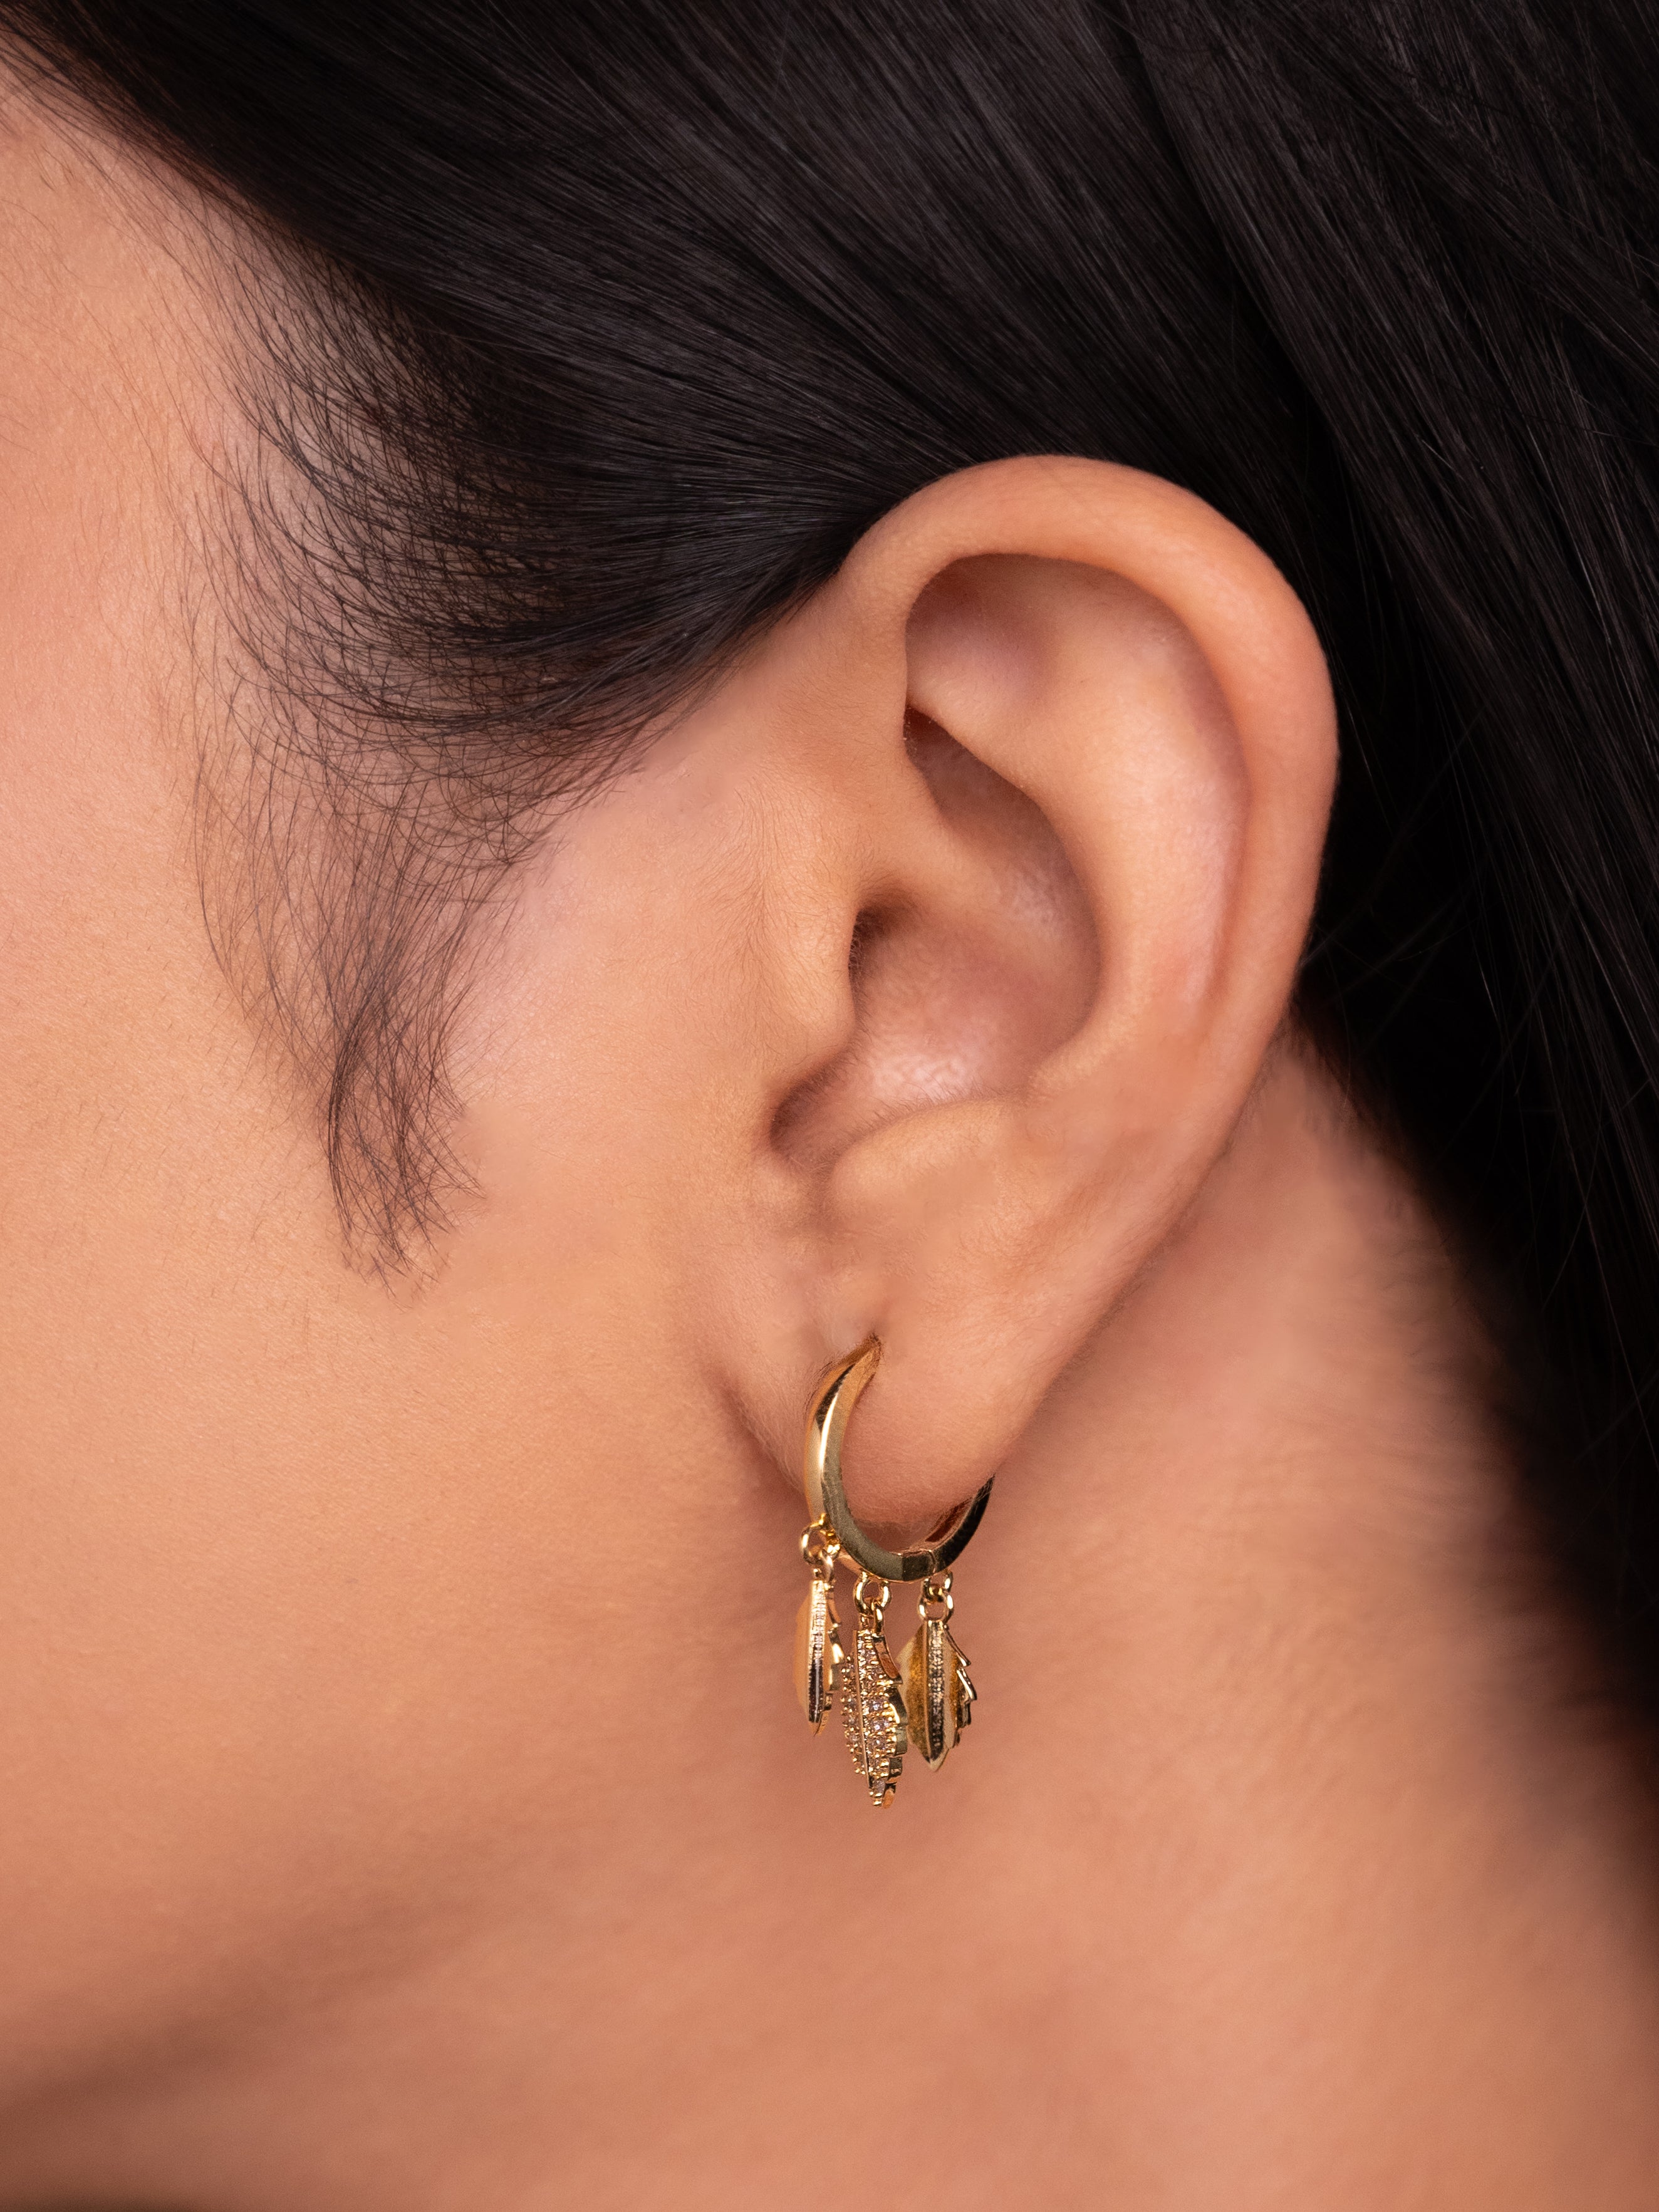 Gold Boho Earrings | 18k Gold Plated